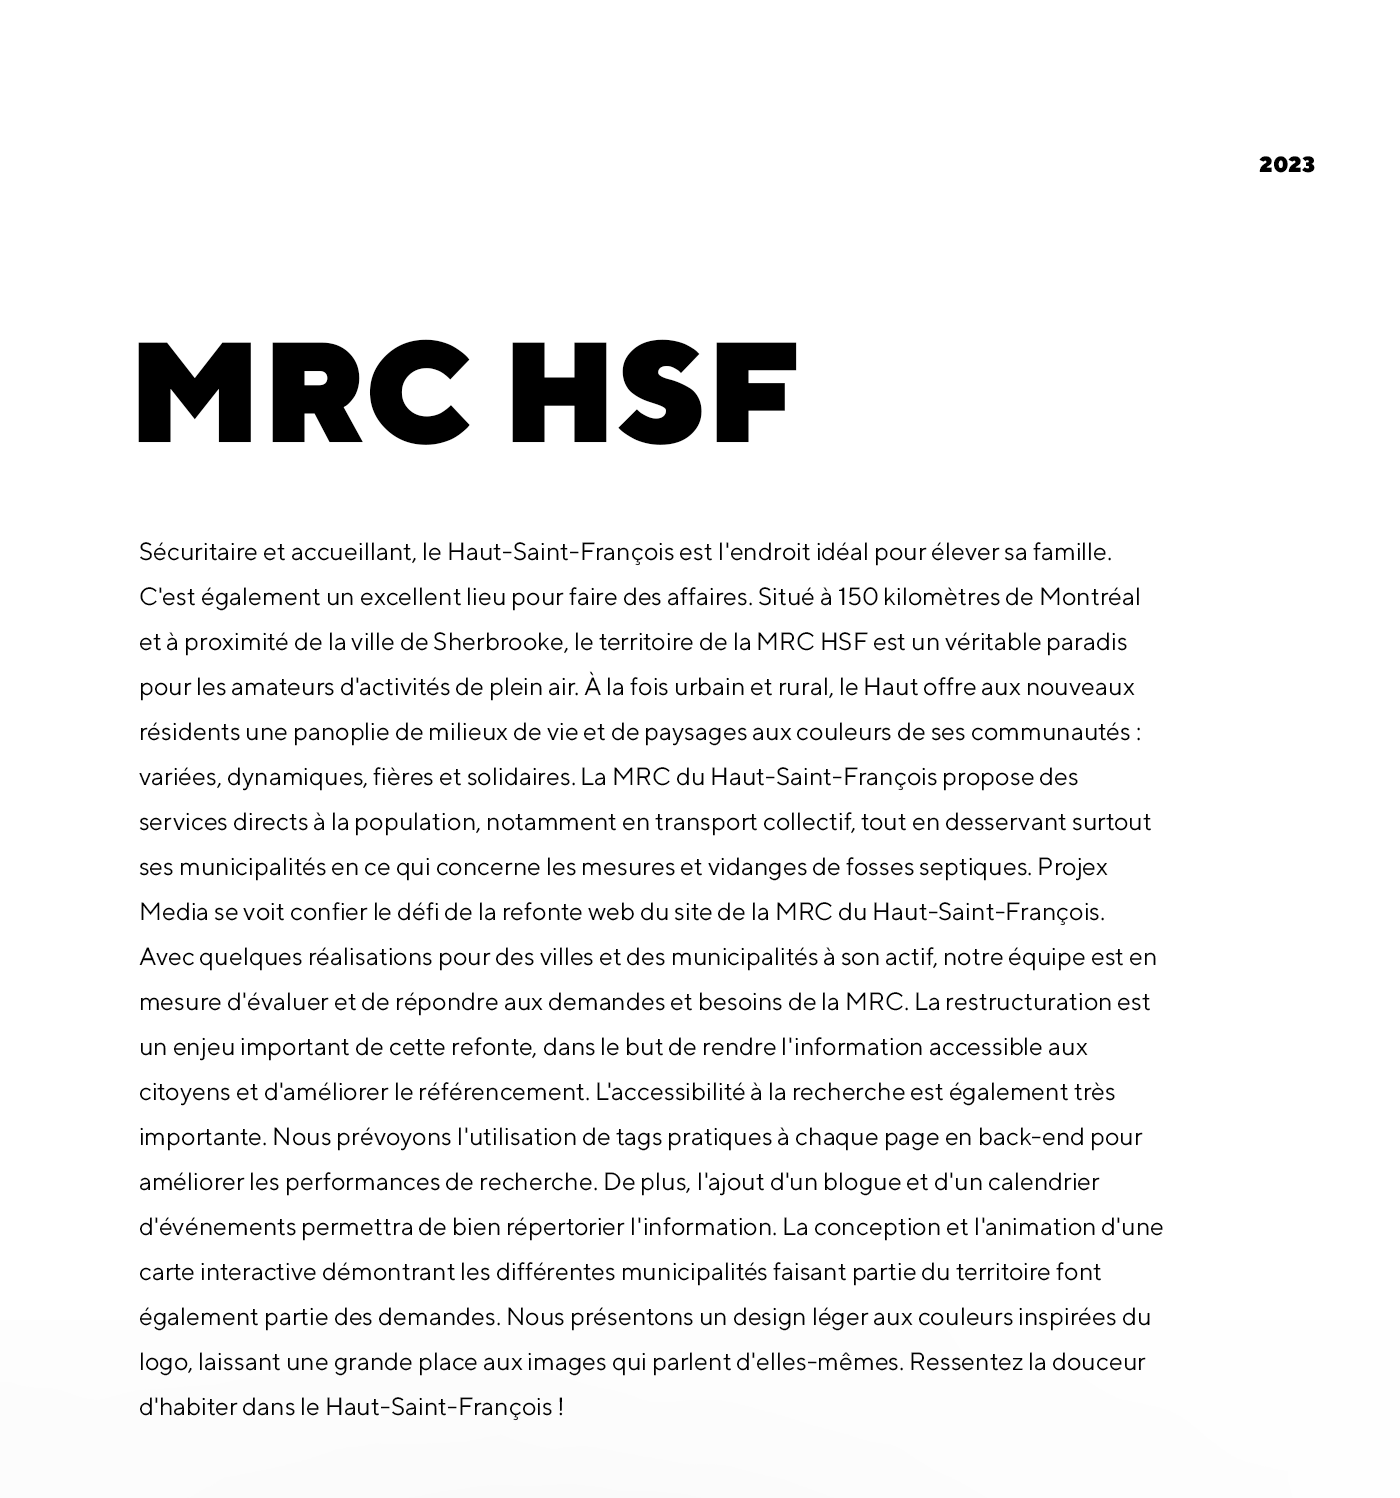 MRC du Haut-Saint-François / 2023 - Réalisation signée Projex Media